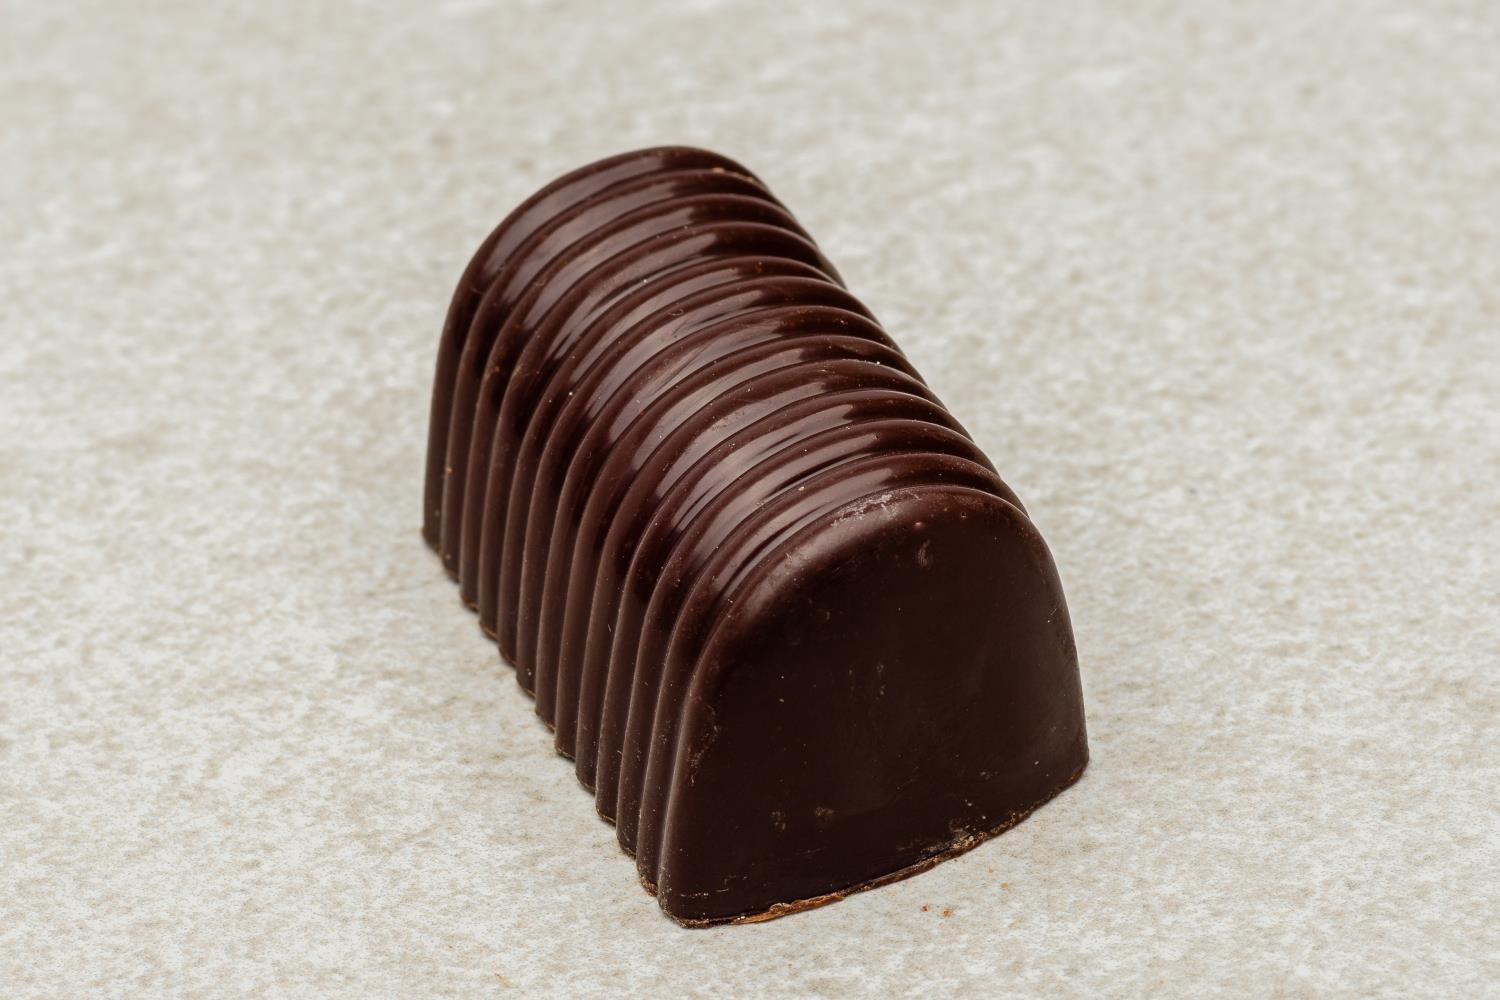 Kubbe mørk sjokolade konfekt